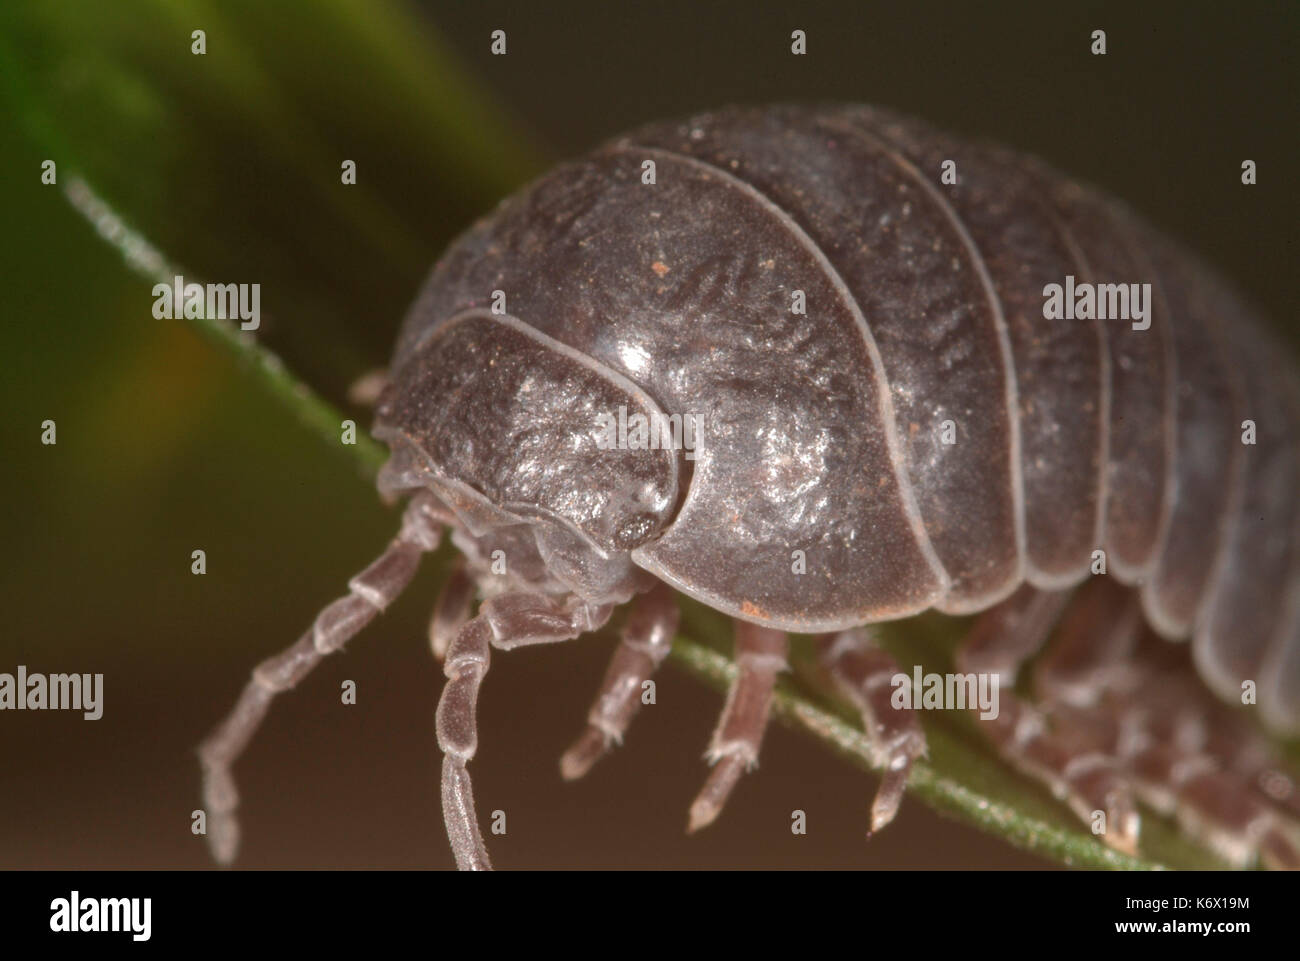 Píldora o woodlice pillbug, Armadillidium vulgare, cerca mostrando el rostro, antenas y ojos pequeños, piernas, macro, bicho común Foto de stock